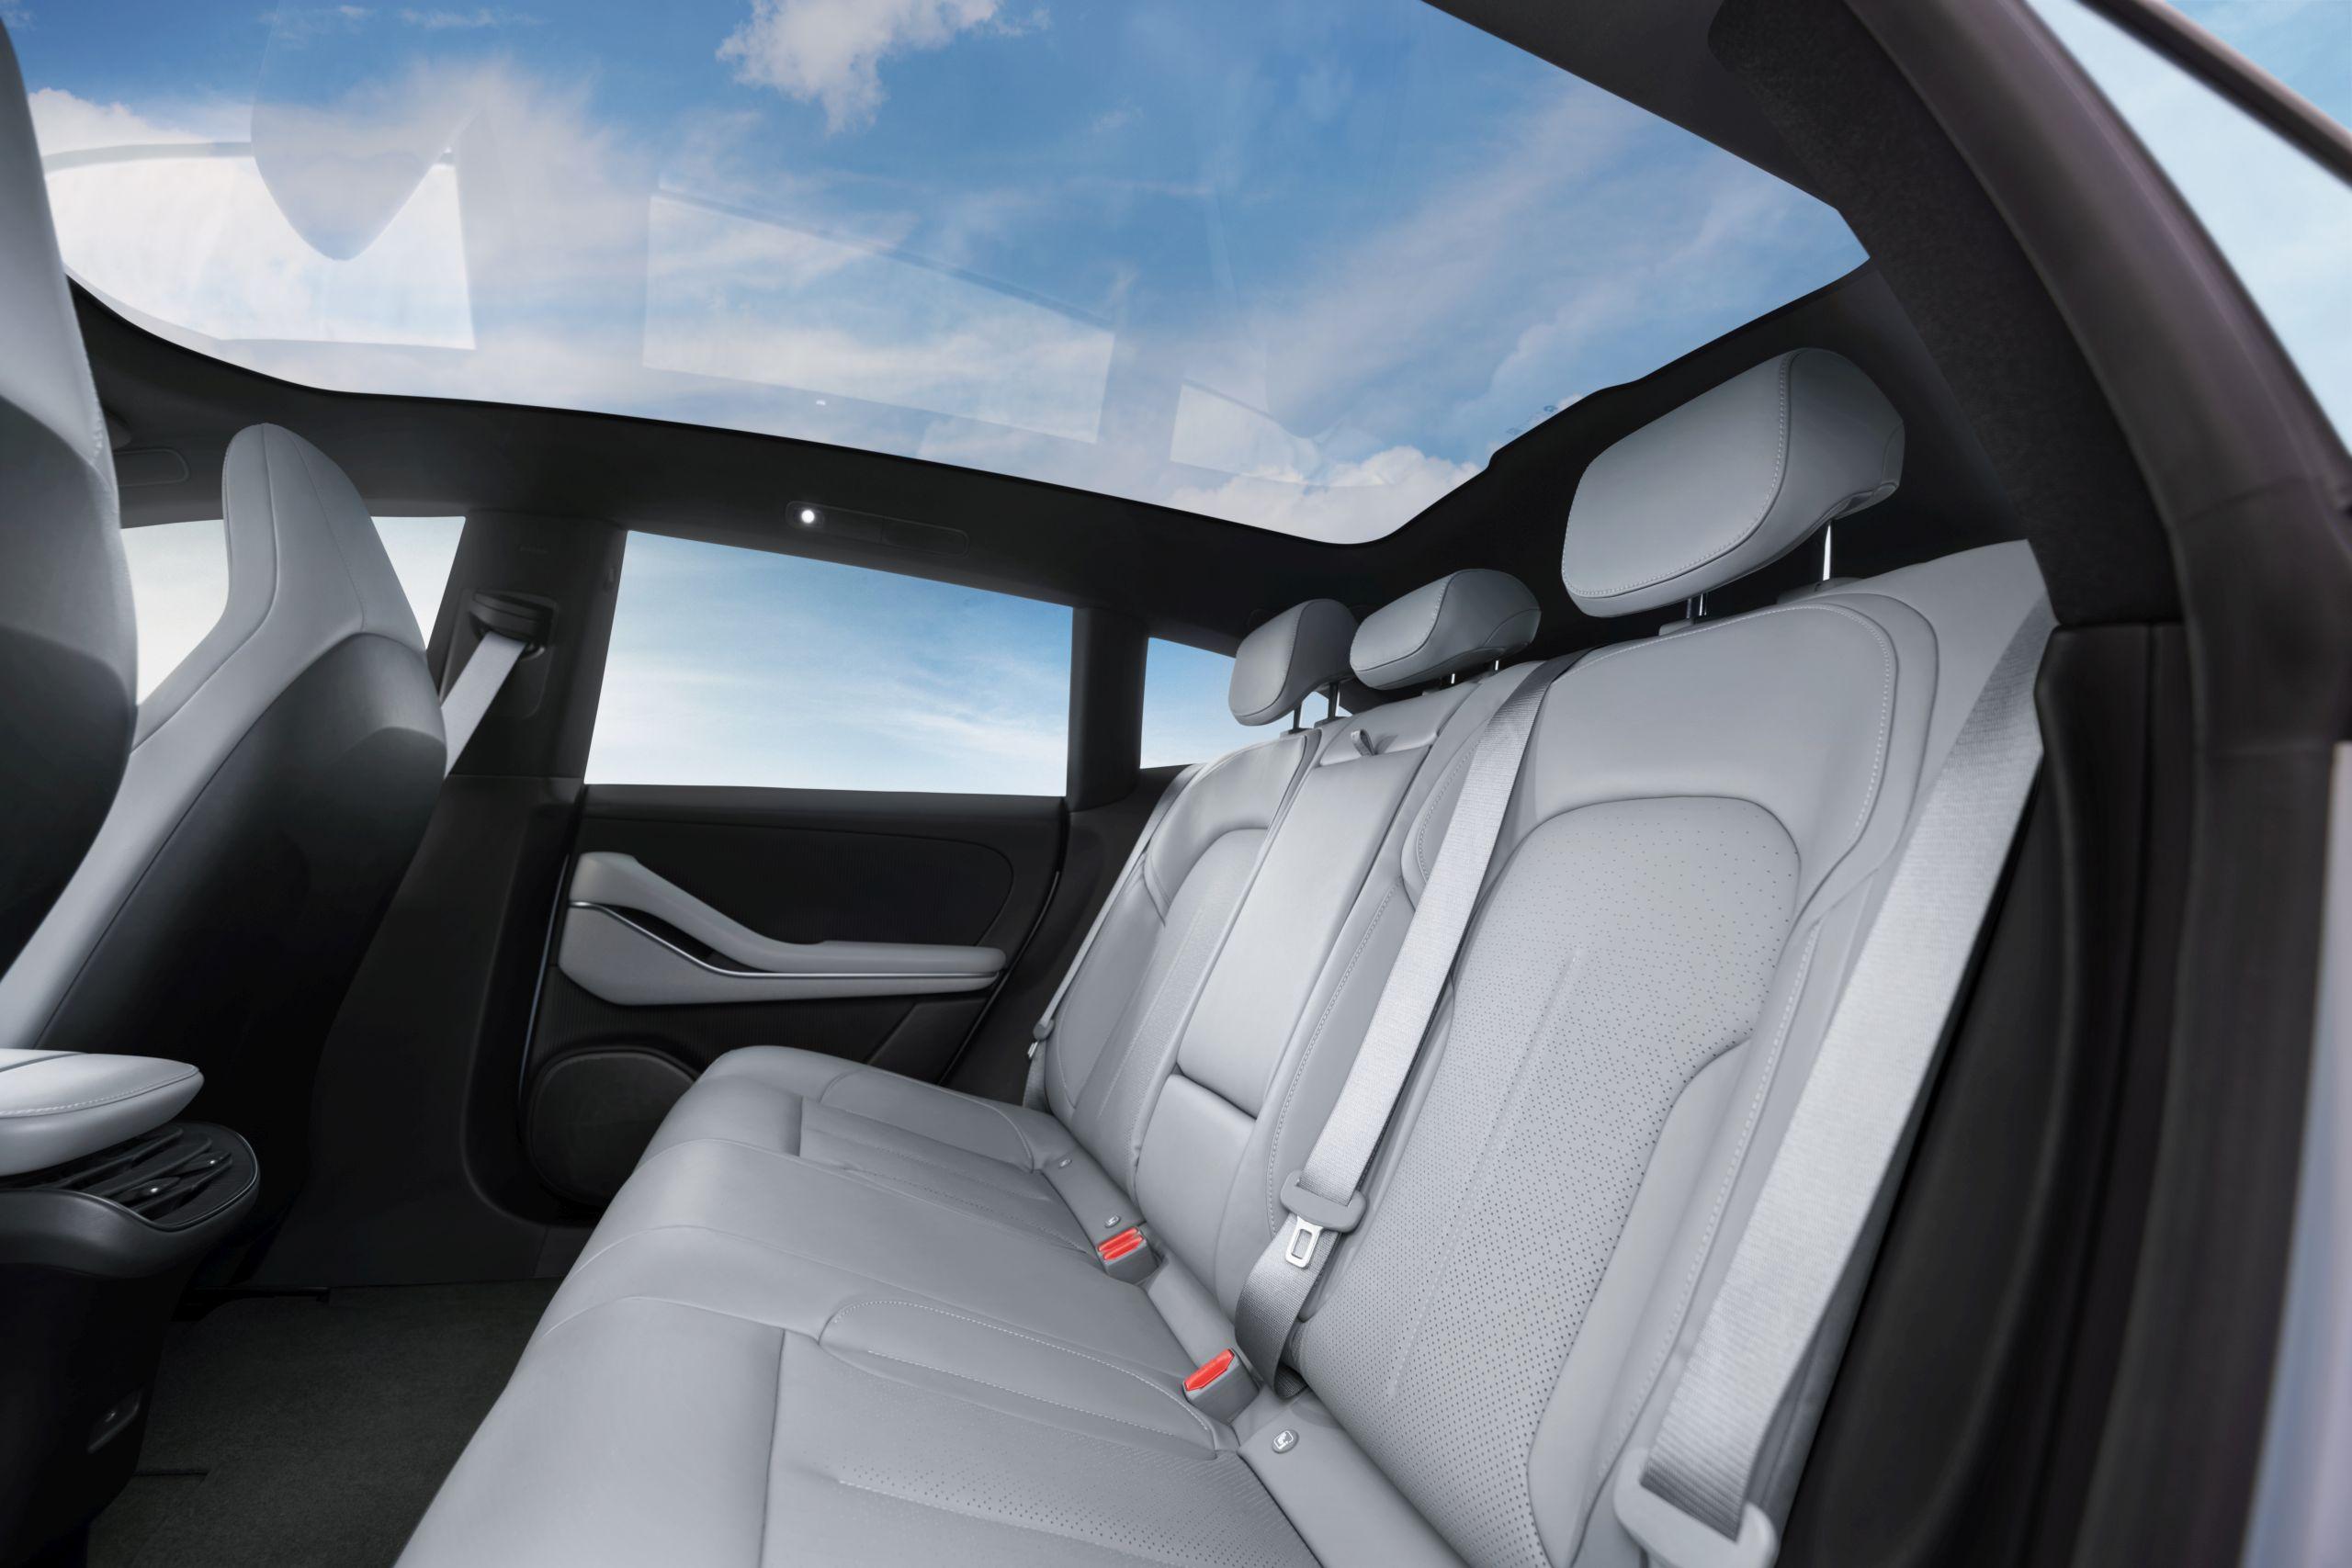 nio-et5-touring-interior-rear-seats